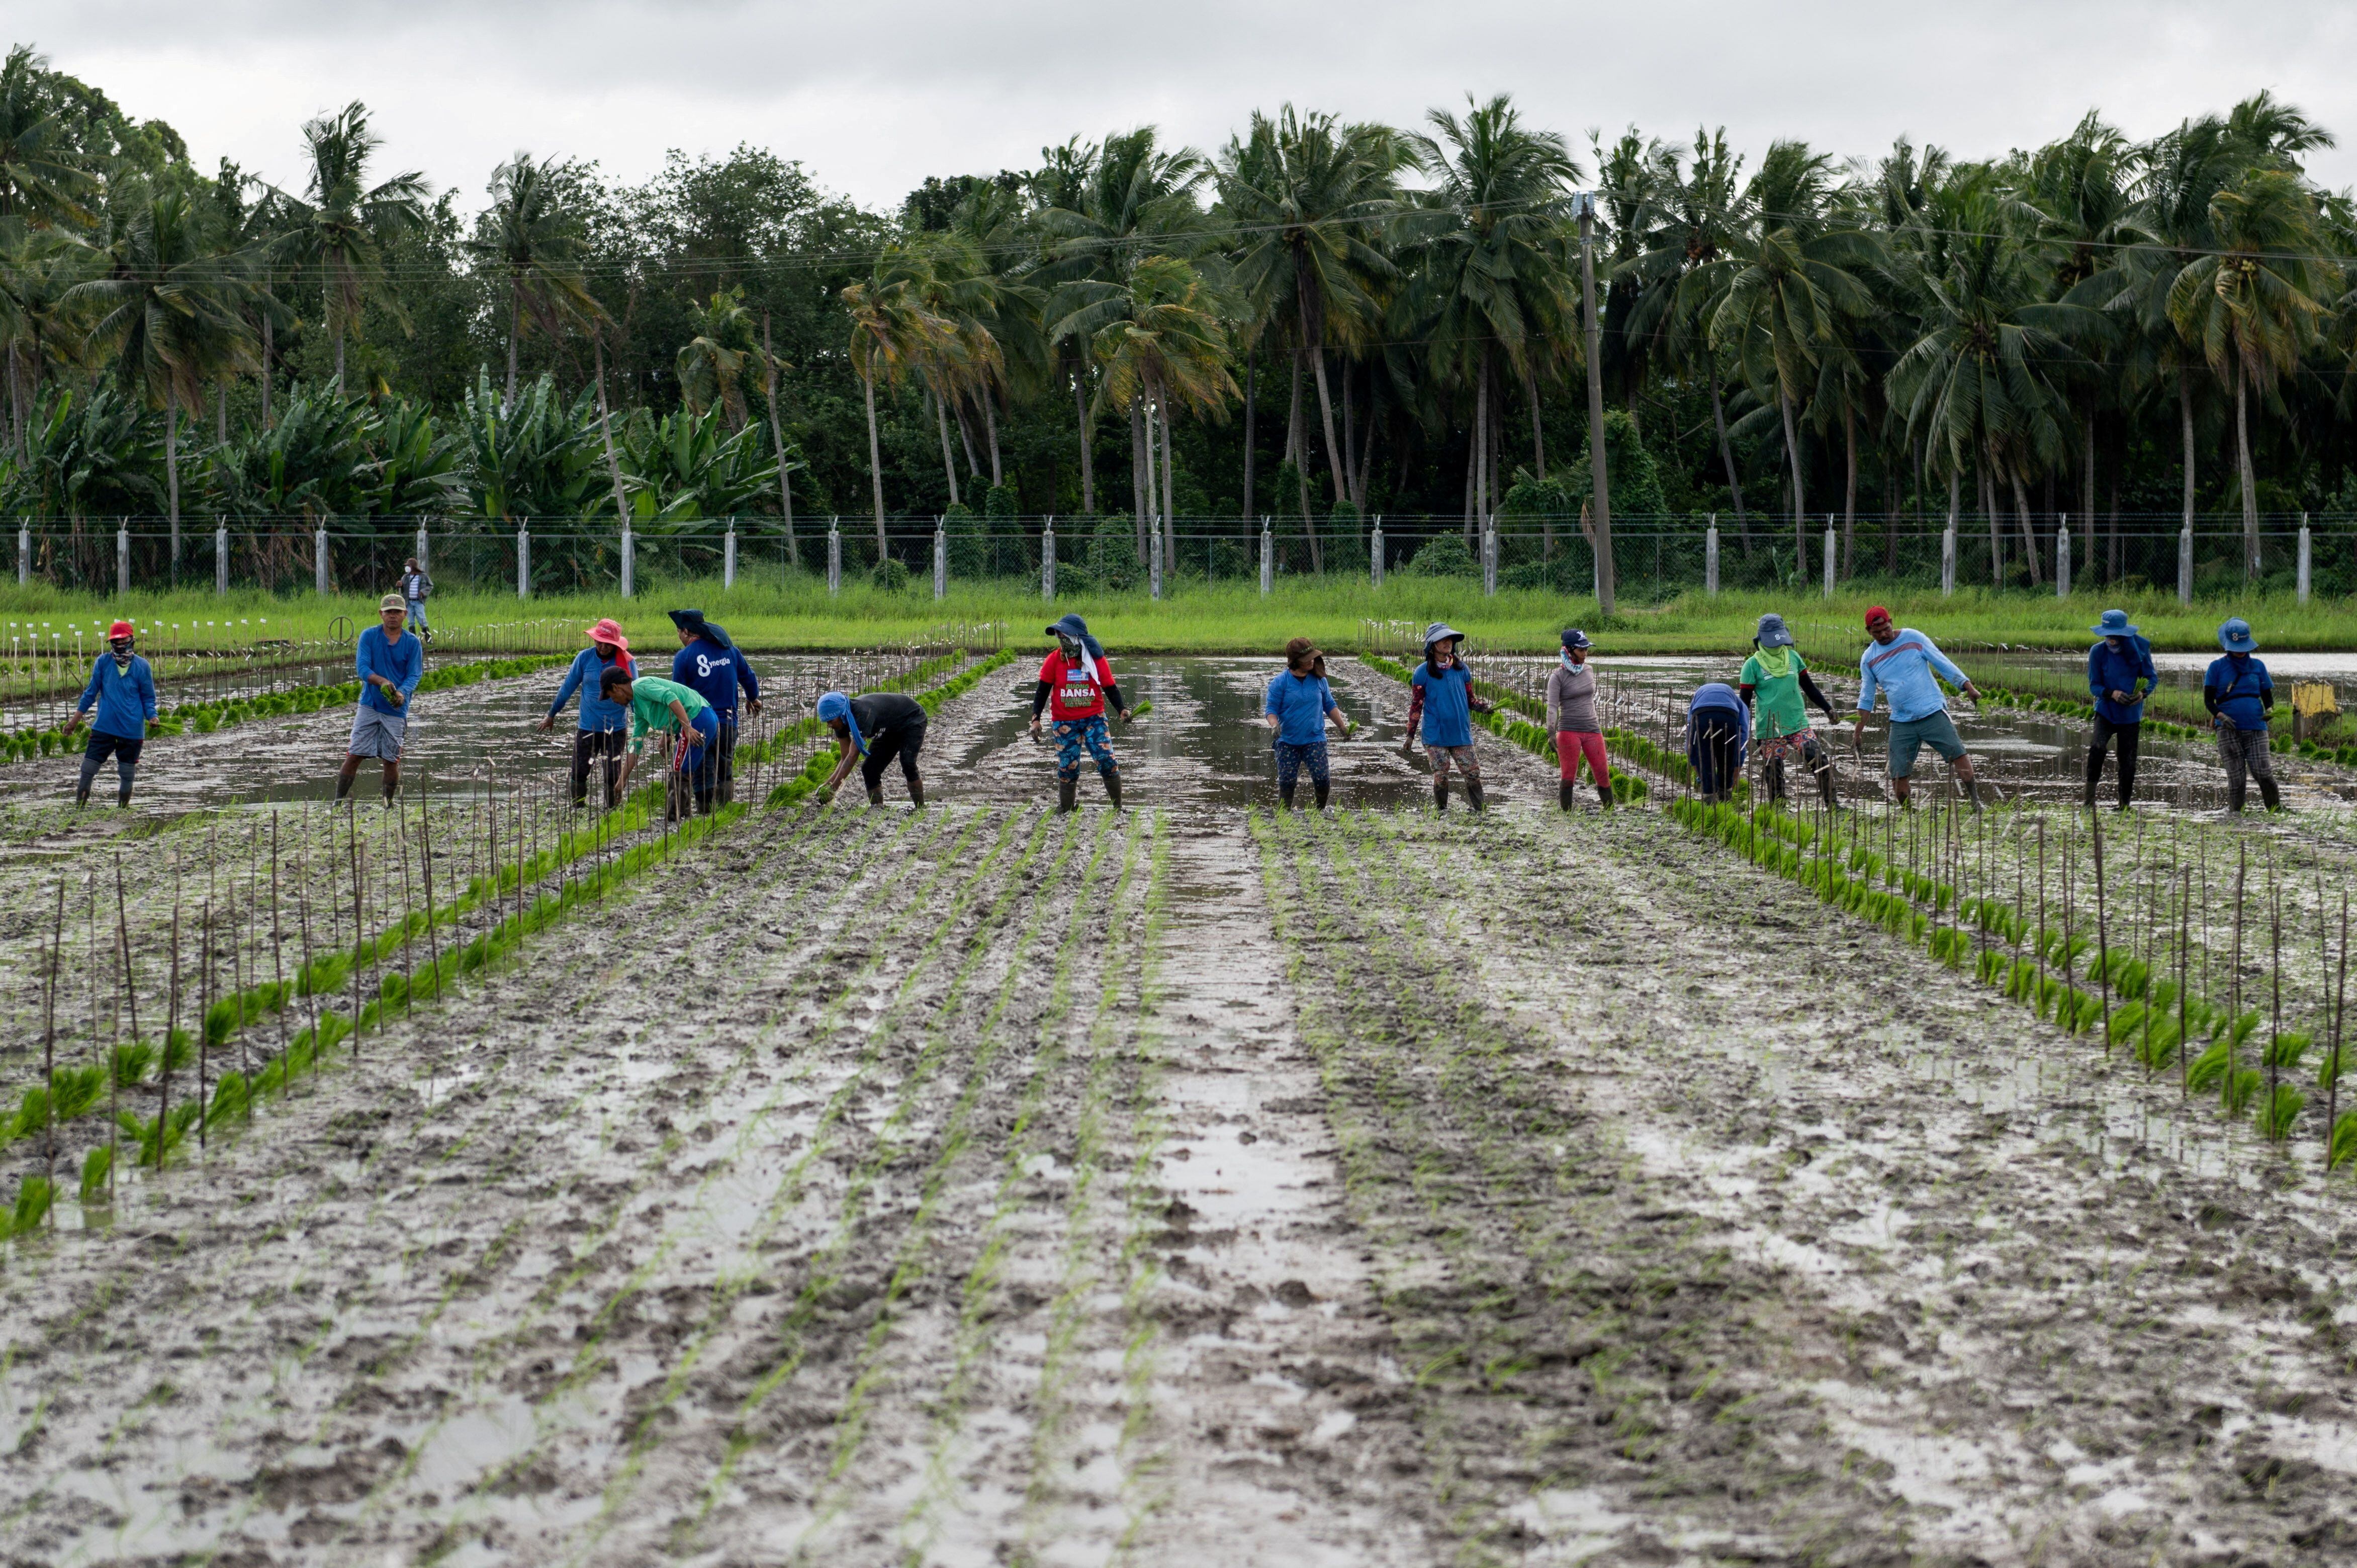 Agricultores plantan plántulas de arroz de una variedad resistente al cambio climático (REUTERS/Lisa Marie David)